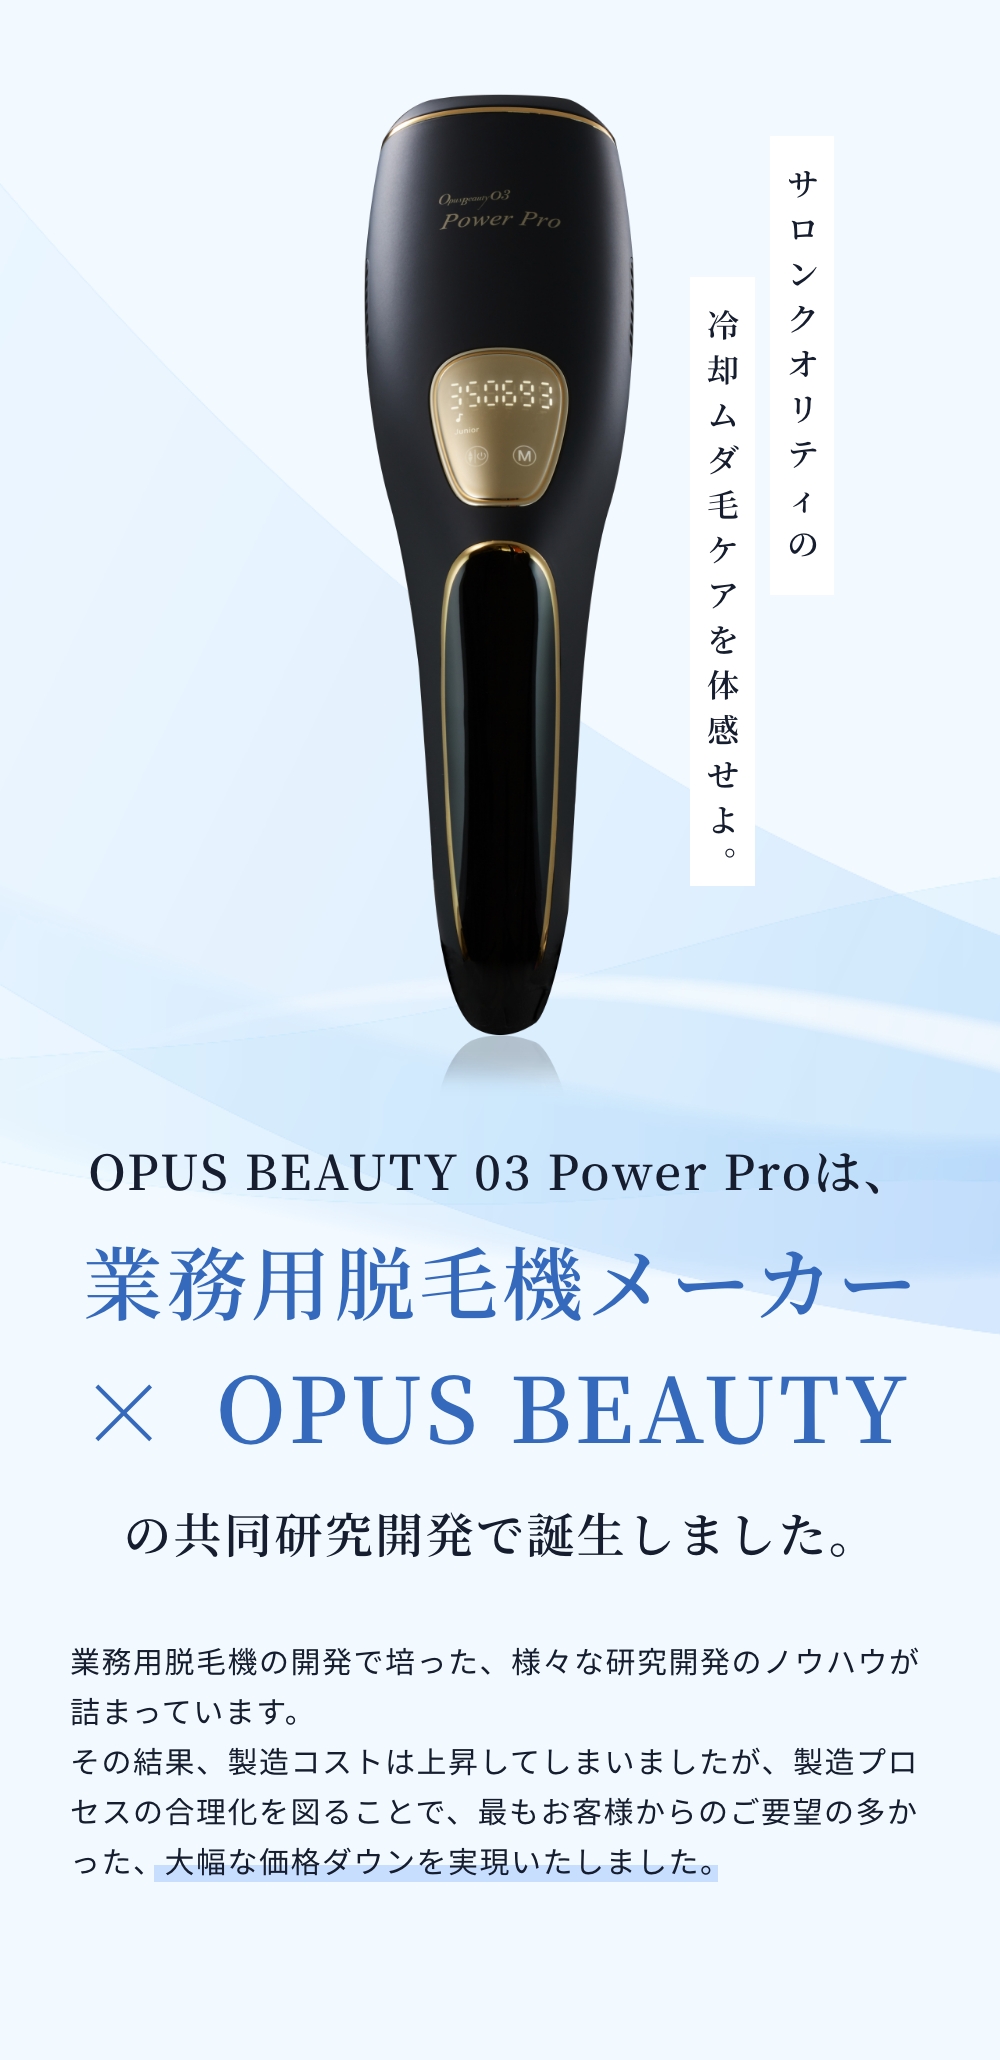 OPUS BEAUTY OPUS BEAUTY 03 POWER PRO BL…+apple-en.jp